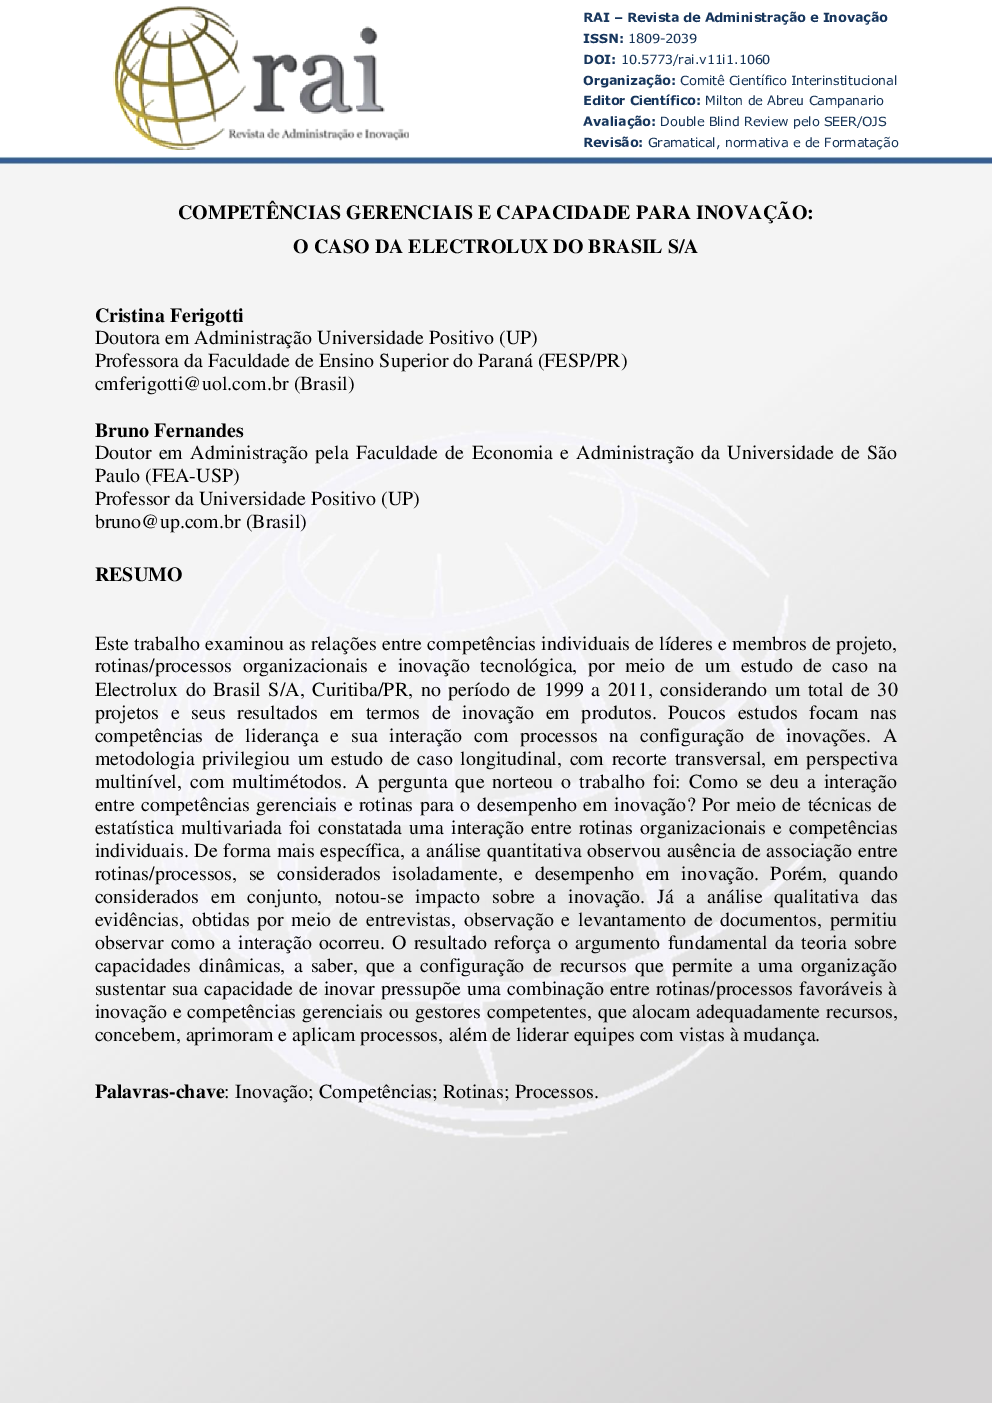 CompetÃªncias Gerenciais e Capacidade para InovaçÃ£o: O Caso da Electrolux do Brasil S/A